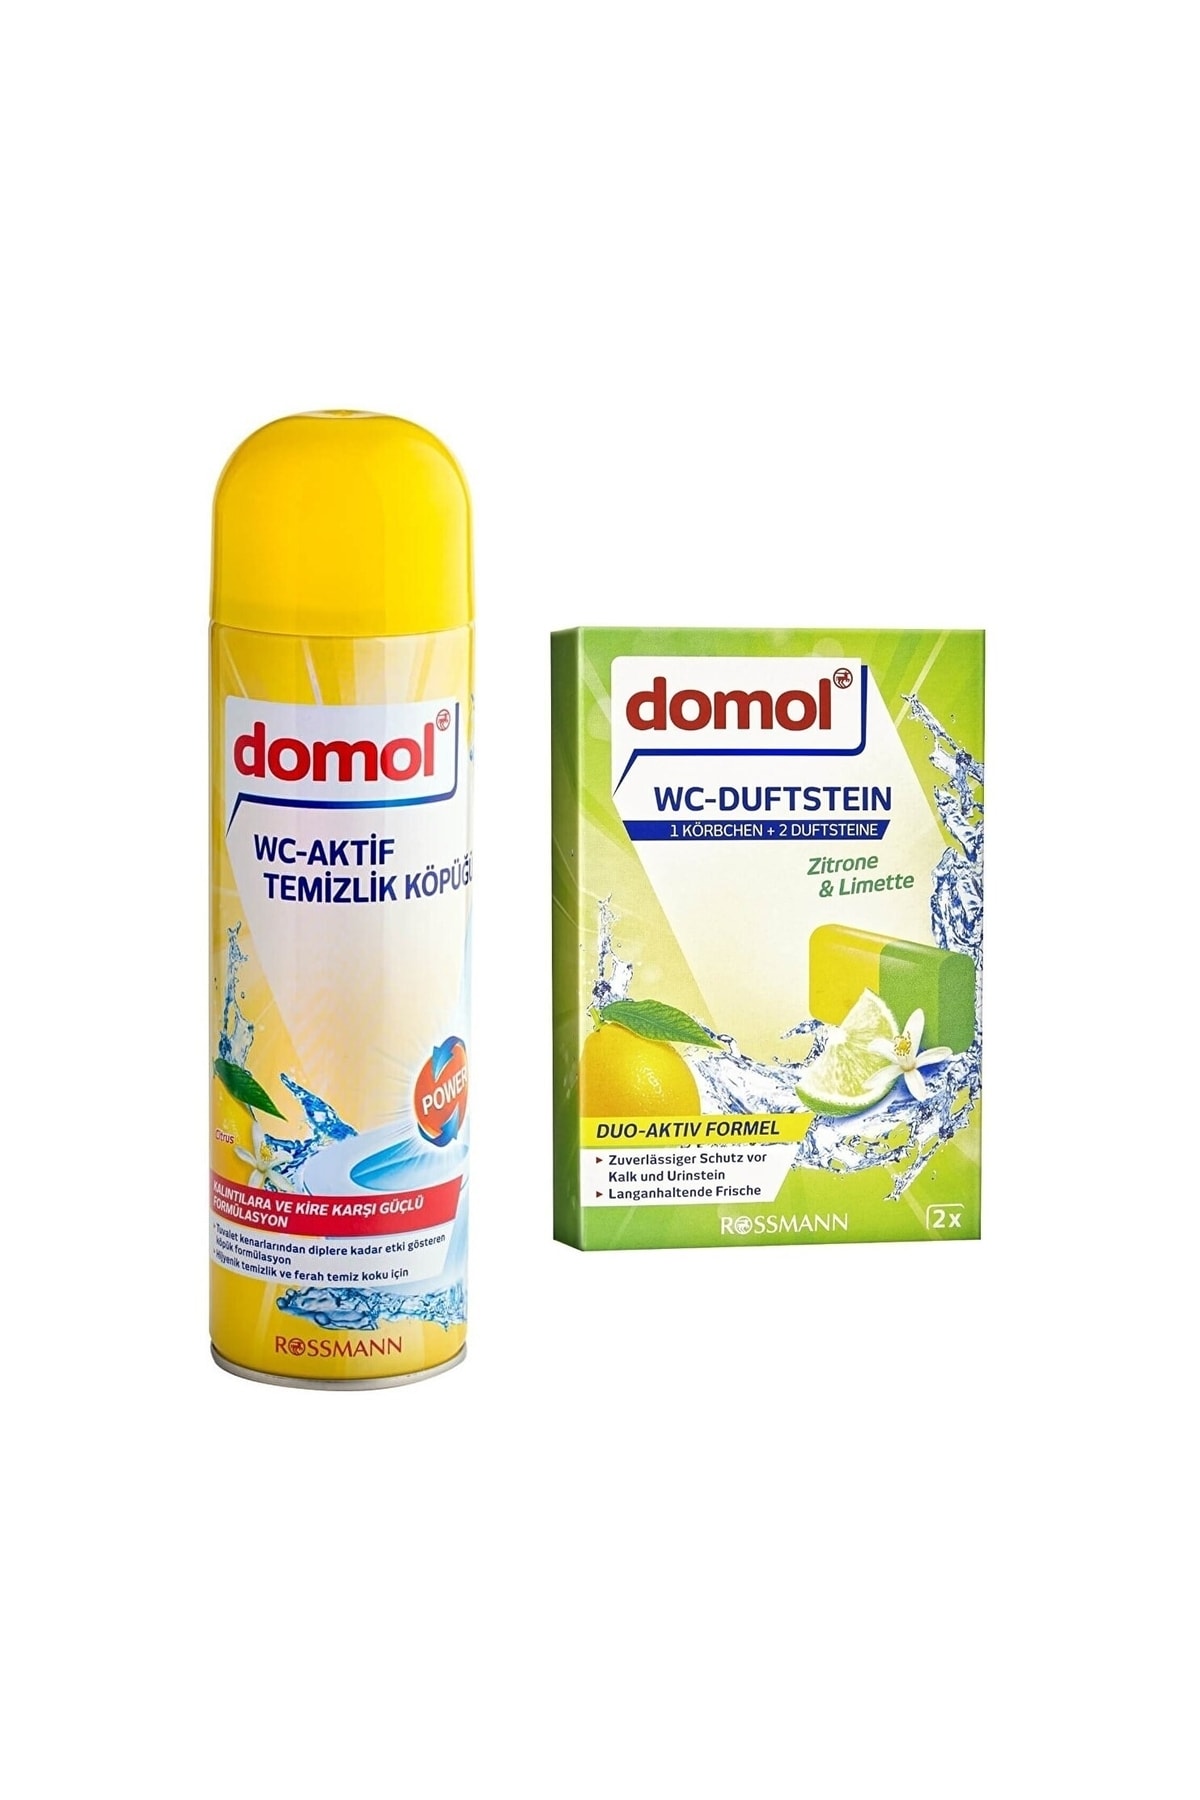 DOMOL Tuvalet Temizleme Köpüğü Limon 500 Ml + Wc Kokusu - Klozet Blok, Askı Aparatlı Limon, 2x40 G 80 G